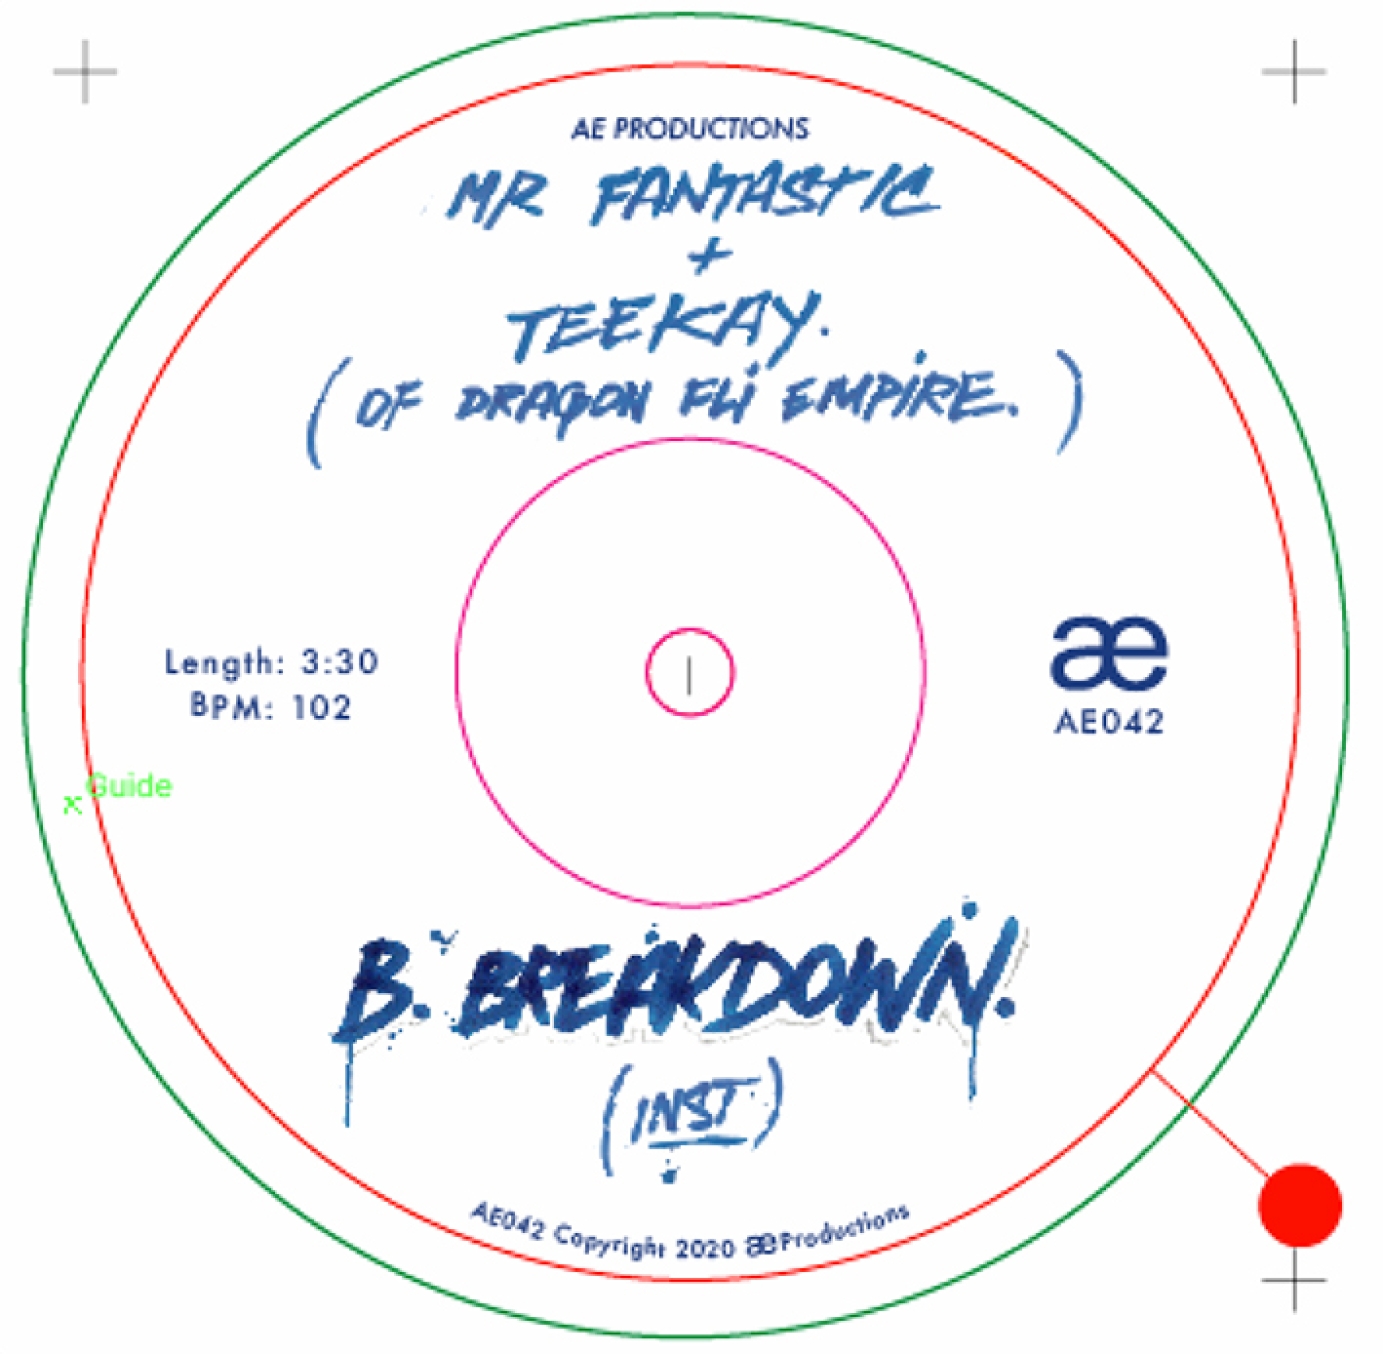 Teekay - Breakdown vinyl artwork